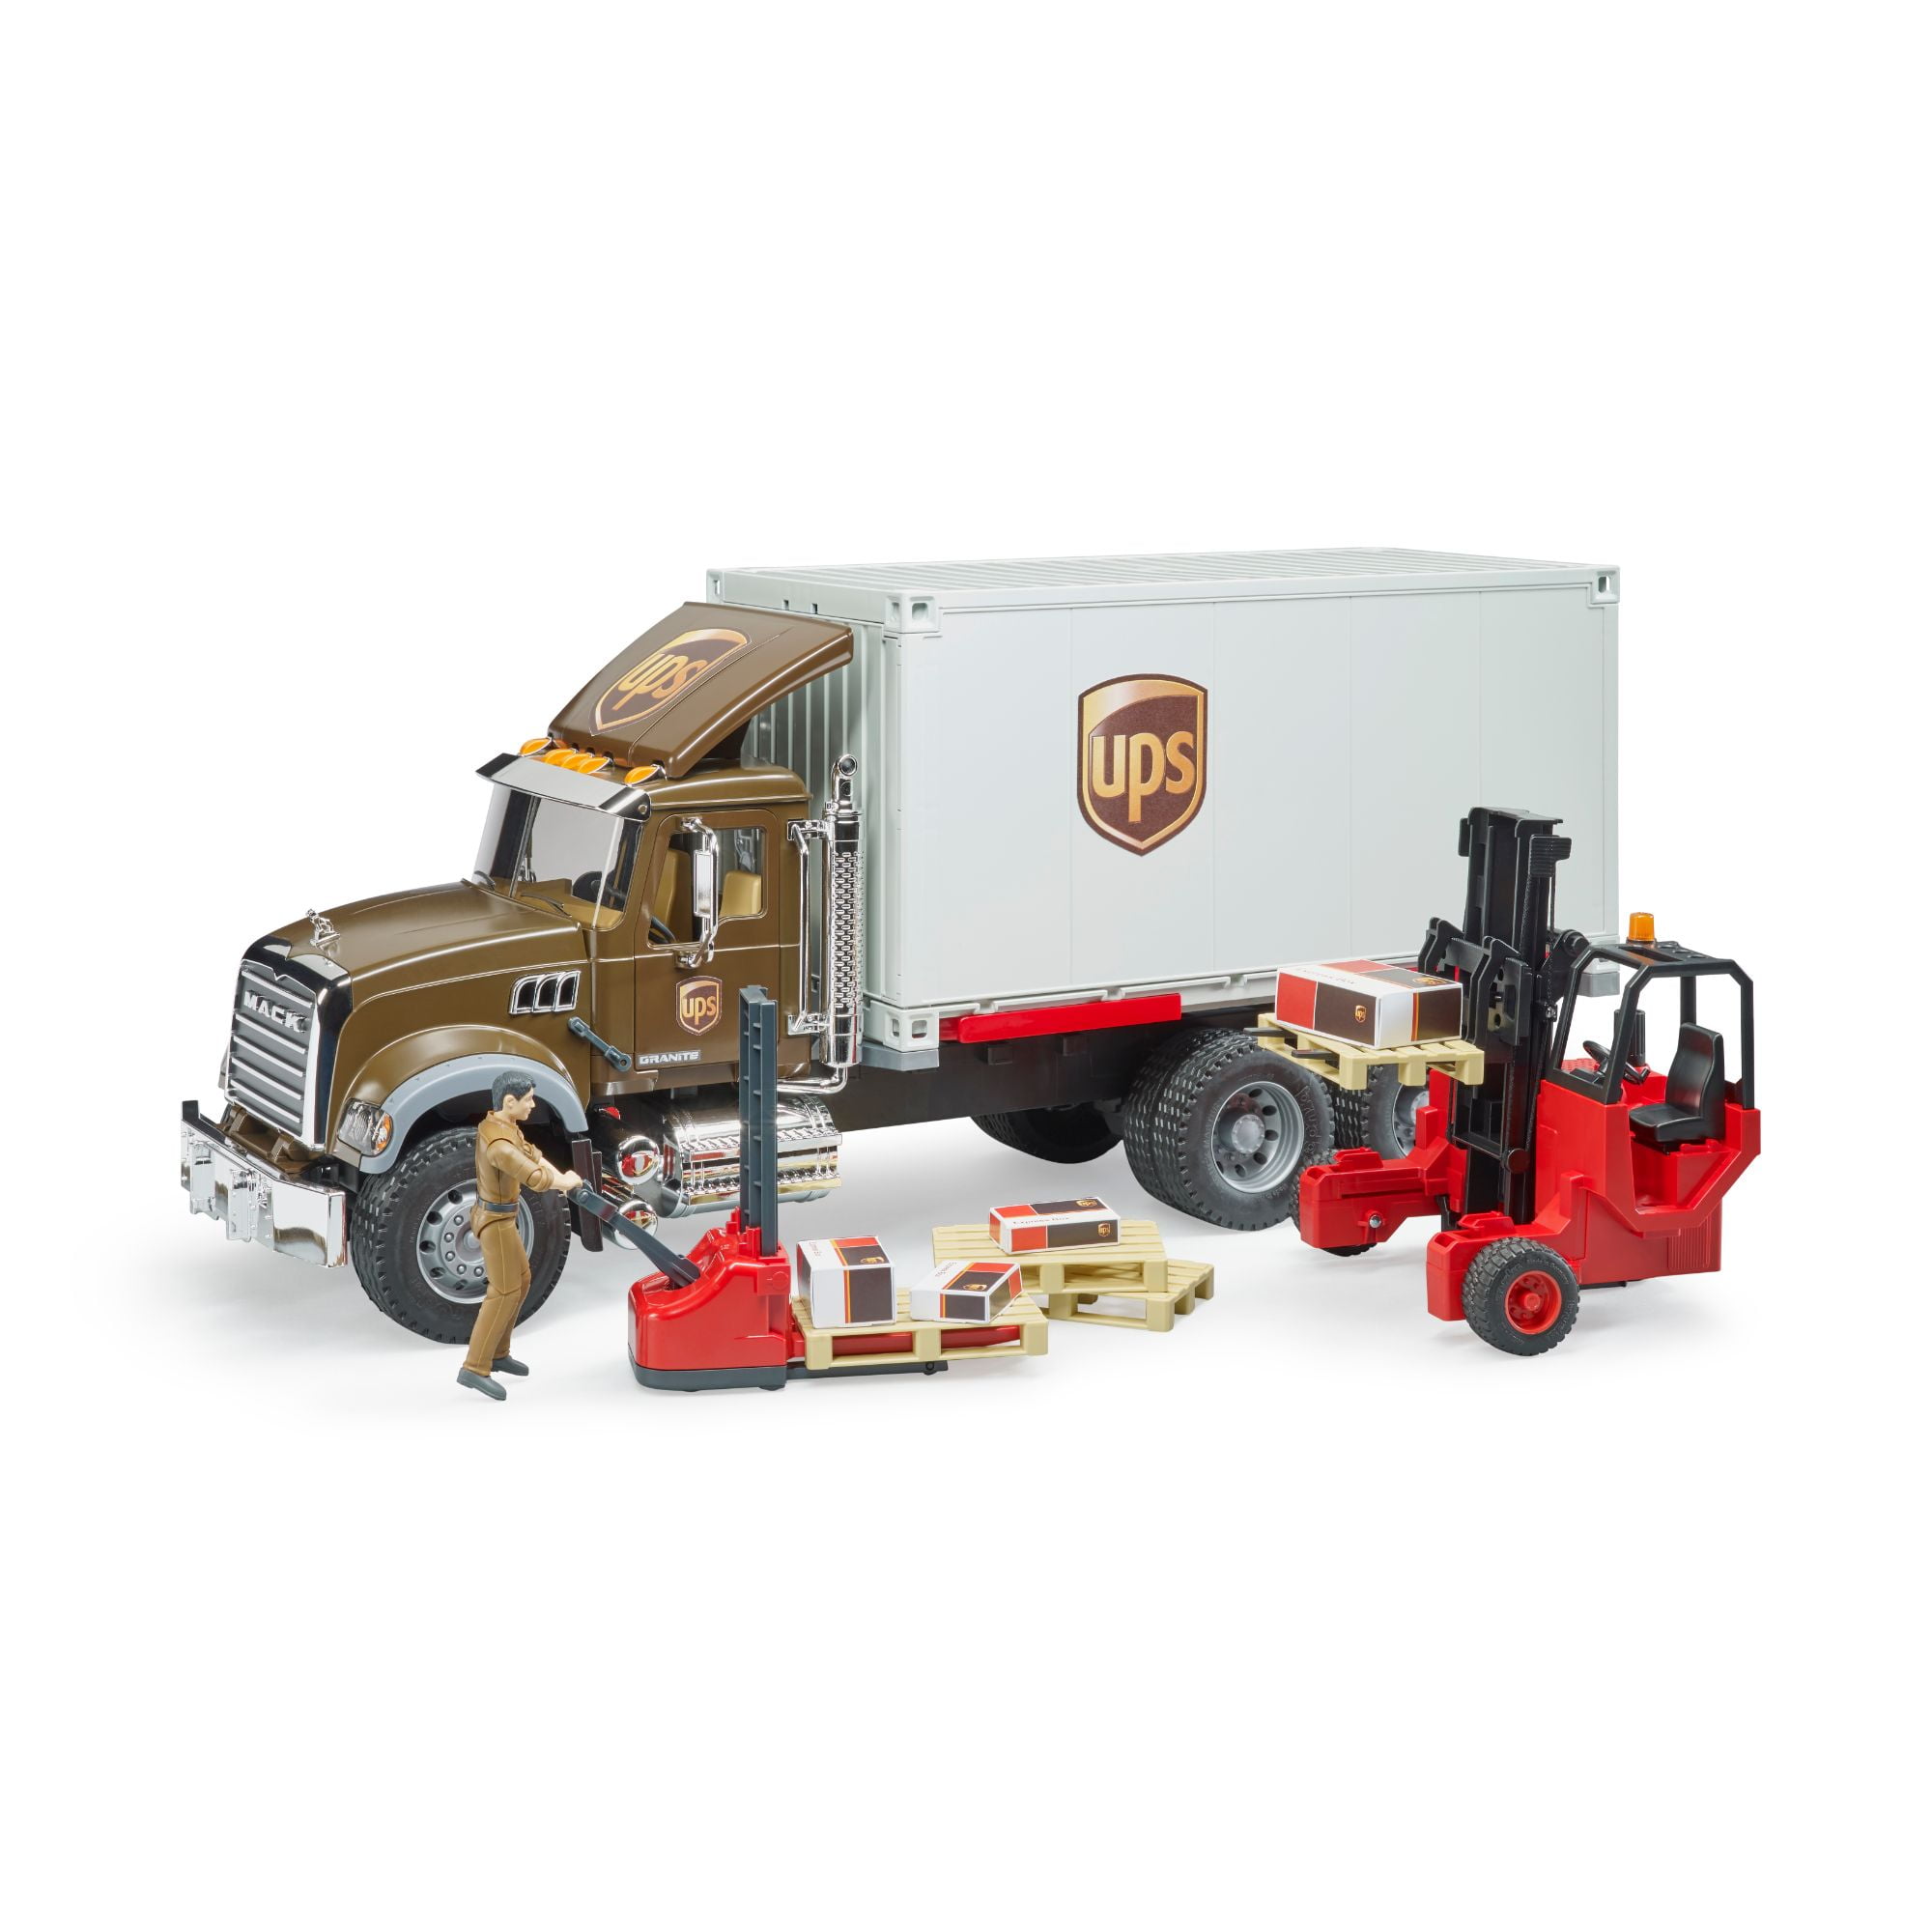 Bruder Mack Granite Ups Logistics Truck & Forklift Kids Childrens Toy Scale 1:16 